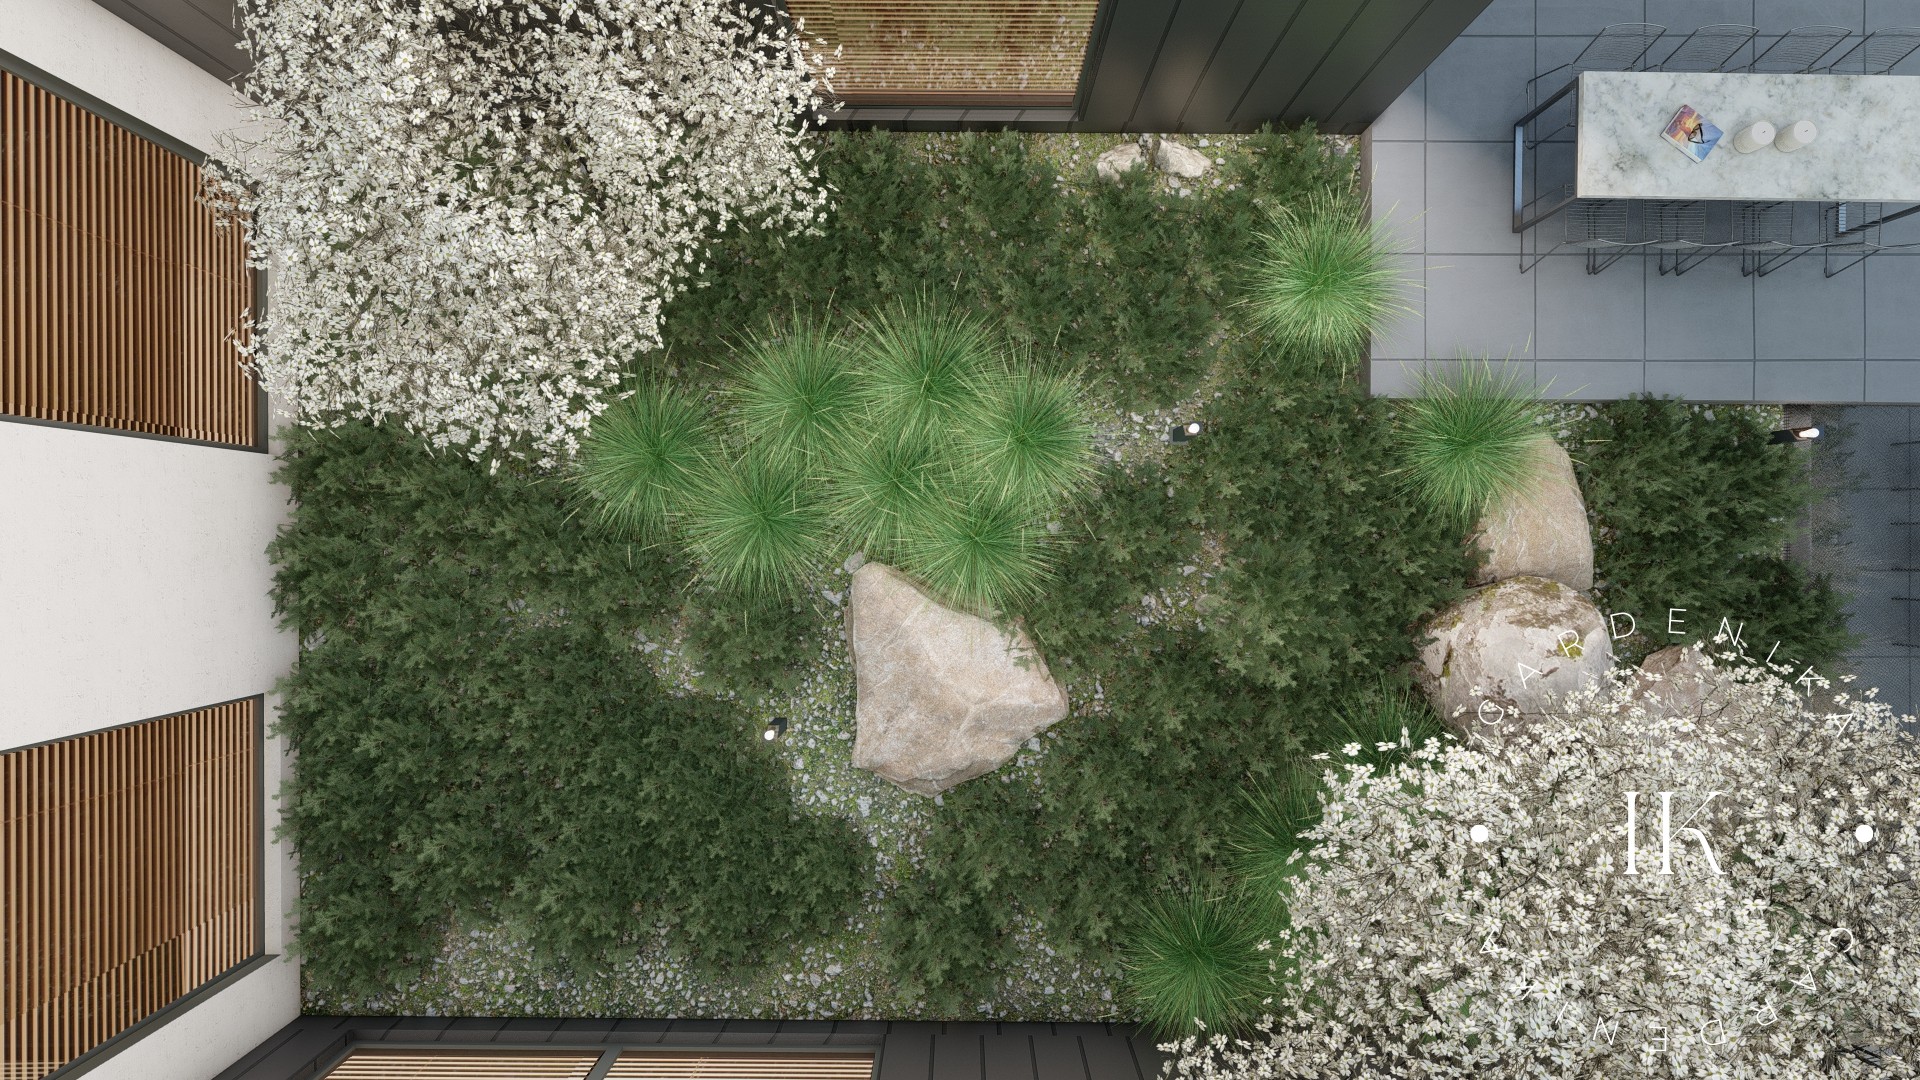 ogrod na wzgorzu gardenika projektowanie ogrodow (25)